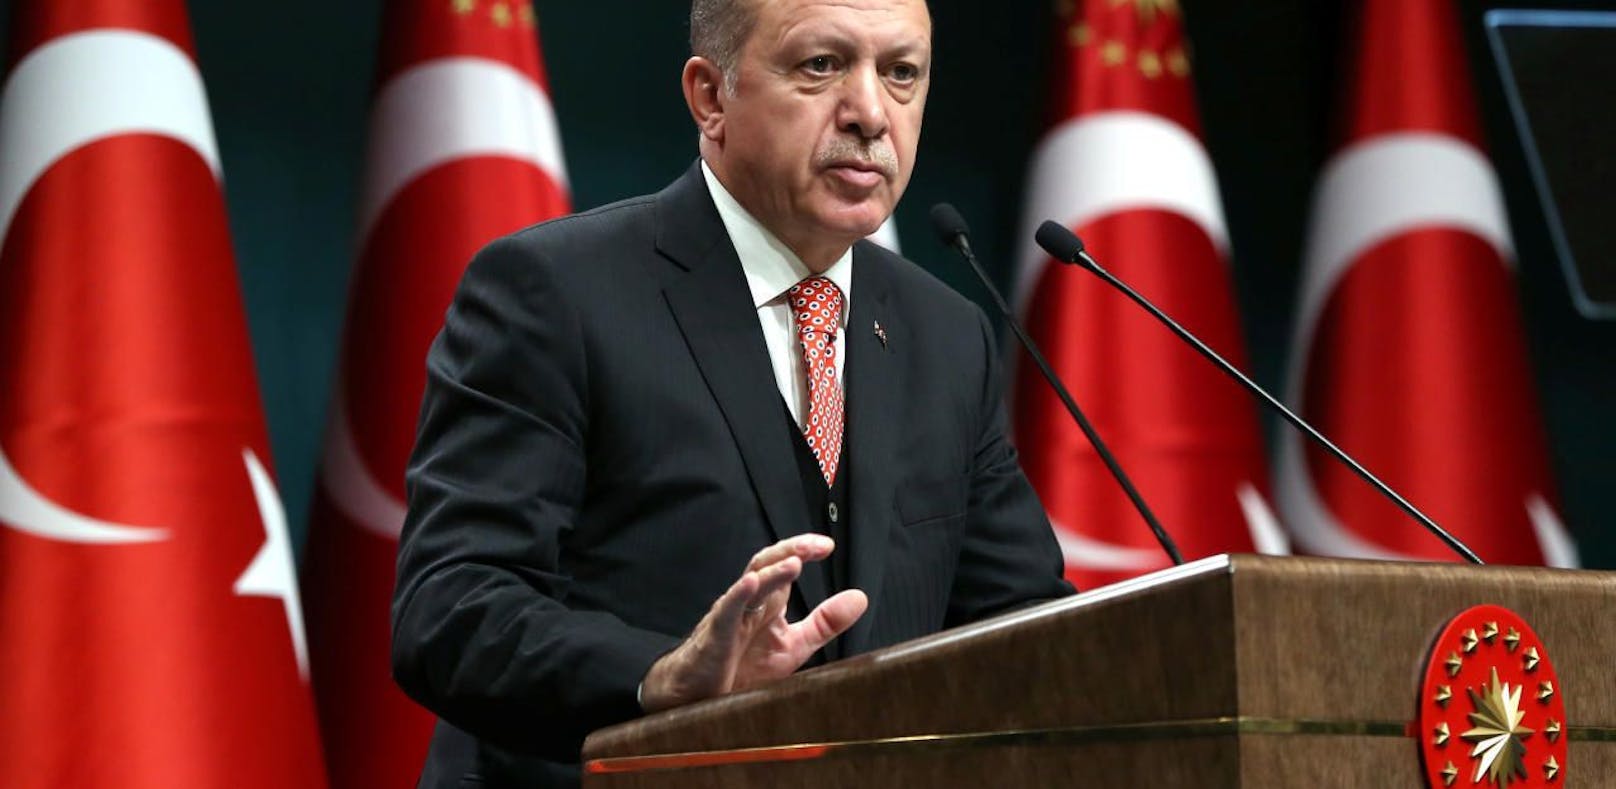 Recep Tayyip Erdogan gewinnt mit der Wahl zum AKP-Chef zusätzlich an Macht.